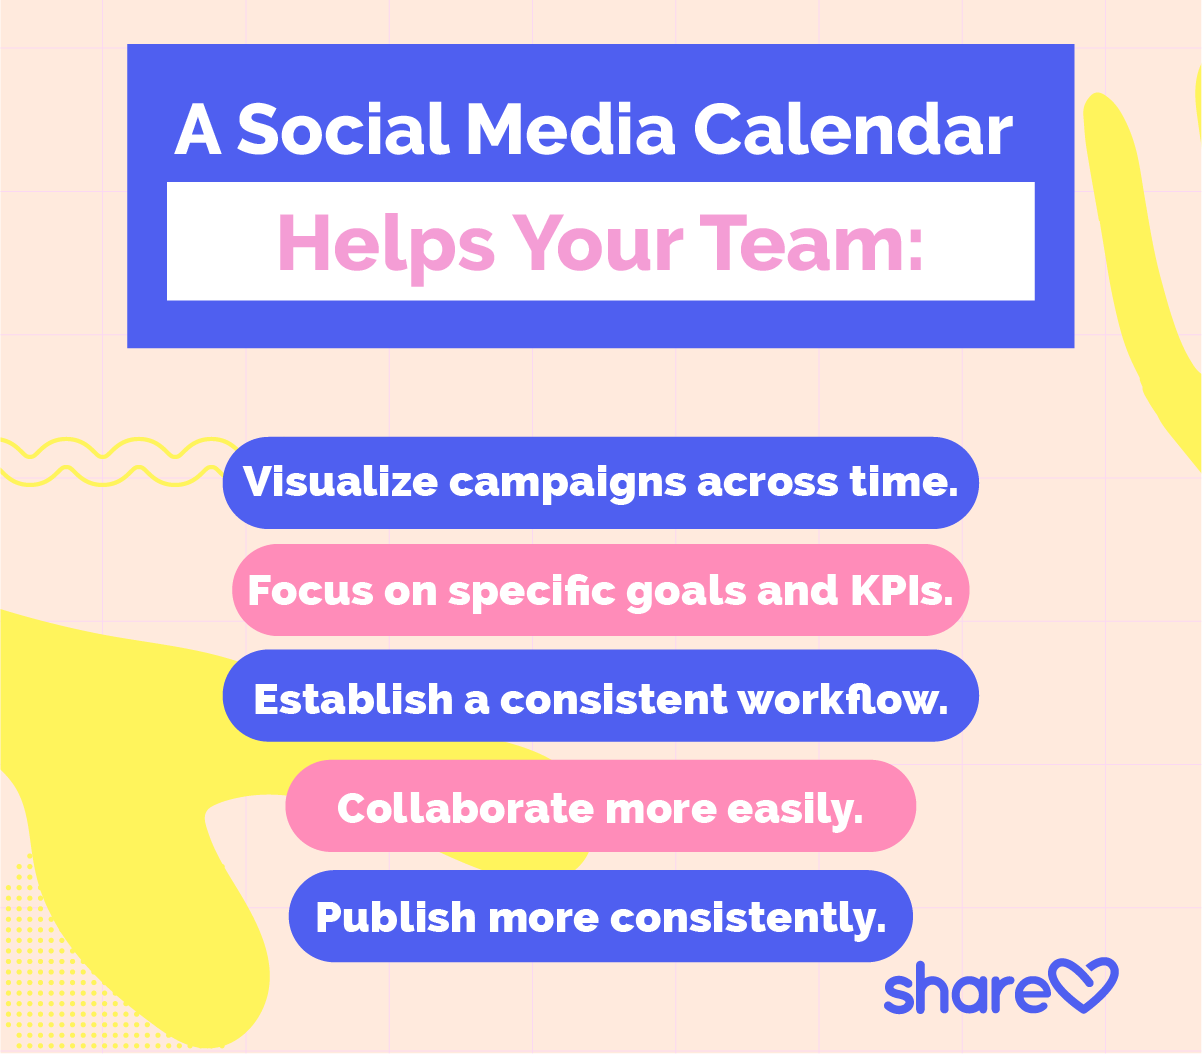 A Social Media Calendar helps your team